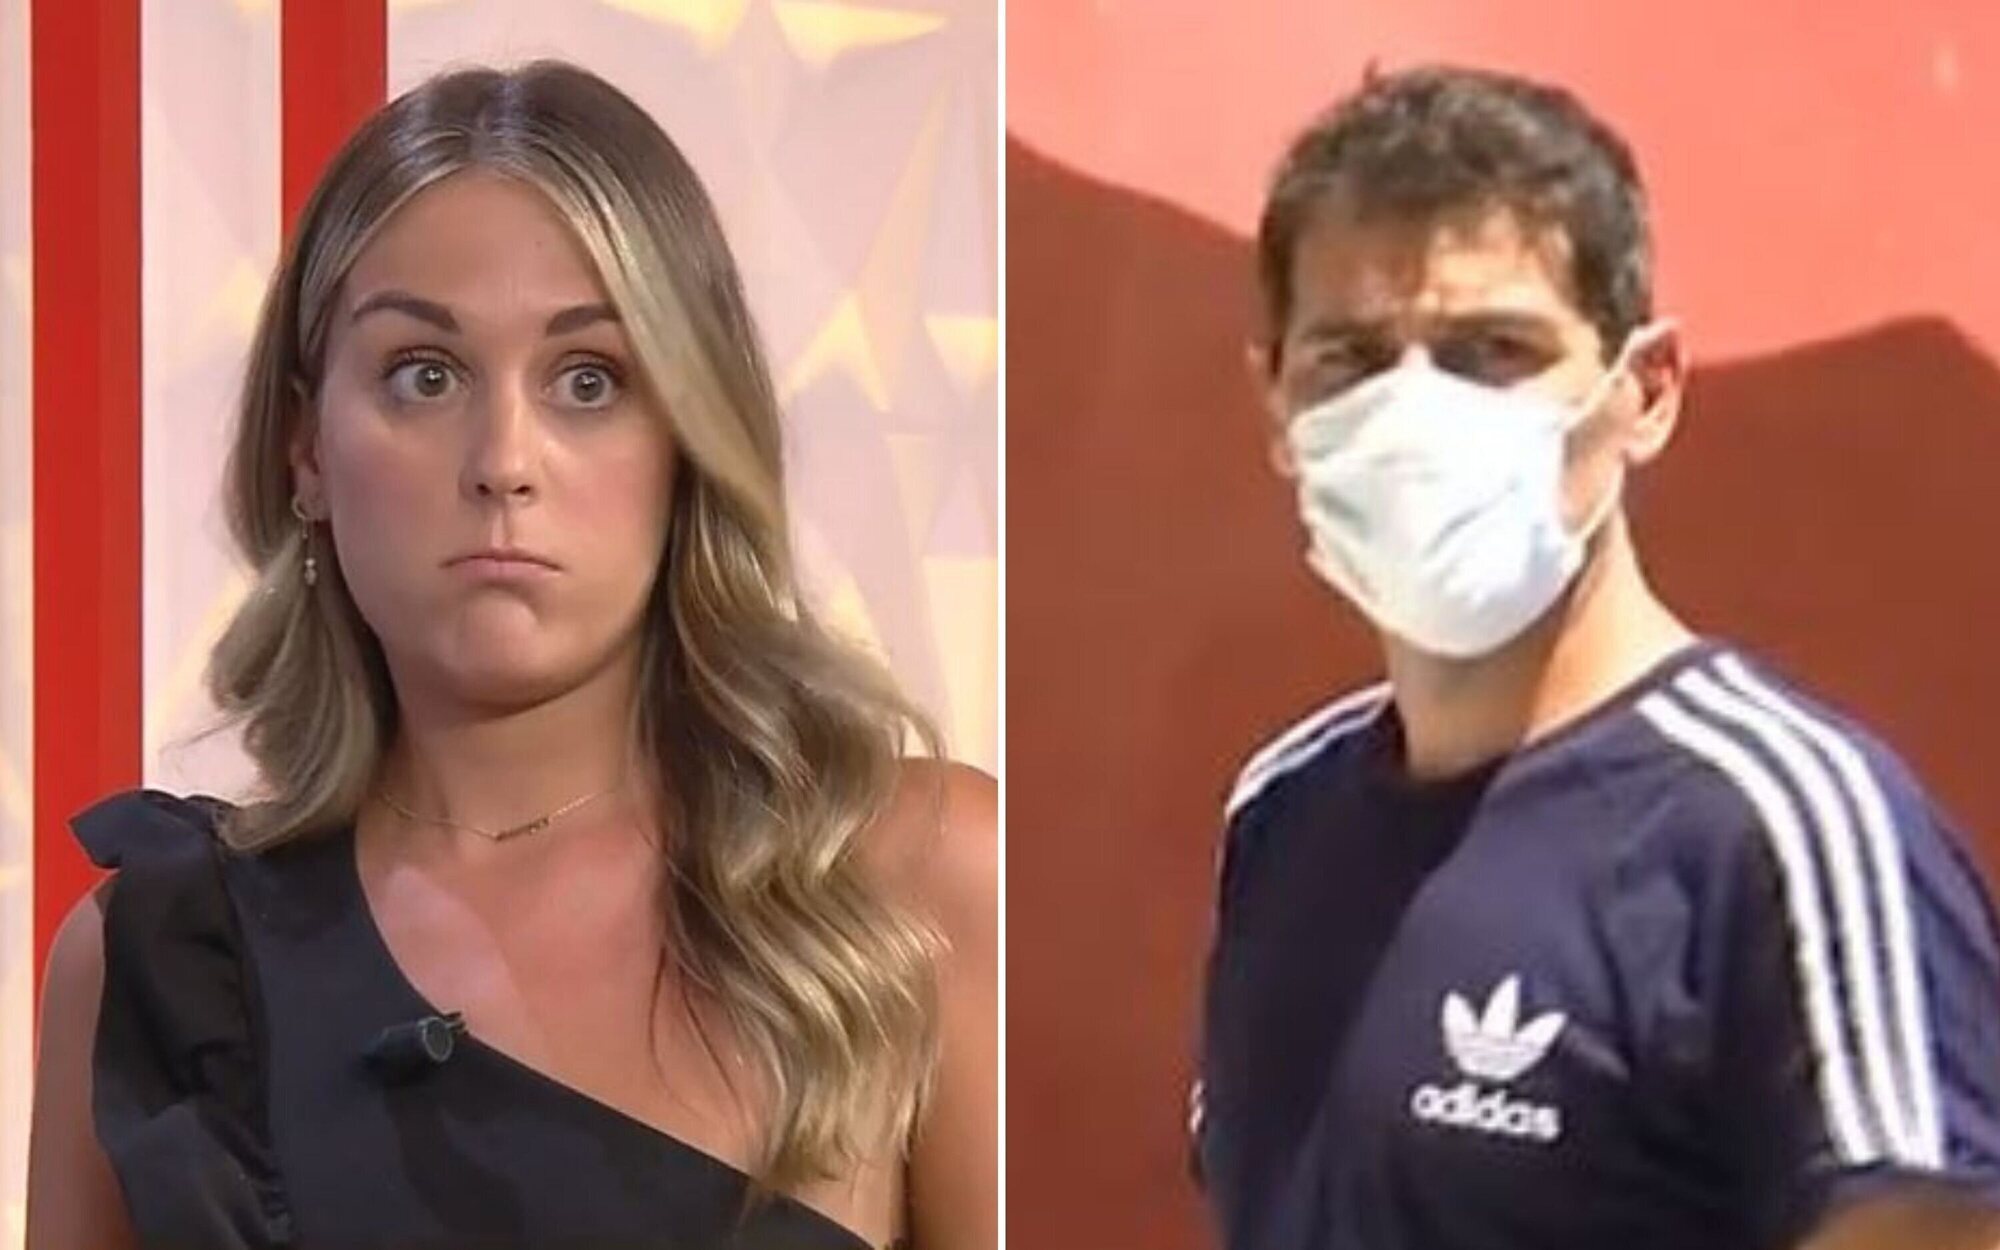 'Socialité' denuncia agresiones por parte de los vecinos de Iker Casillas: "Tuvimos que salir corriendo"